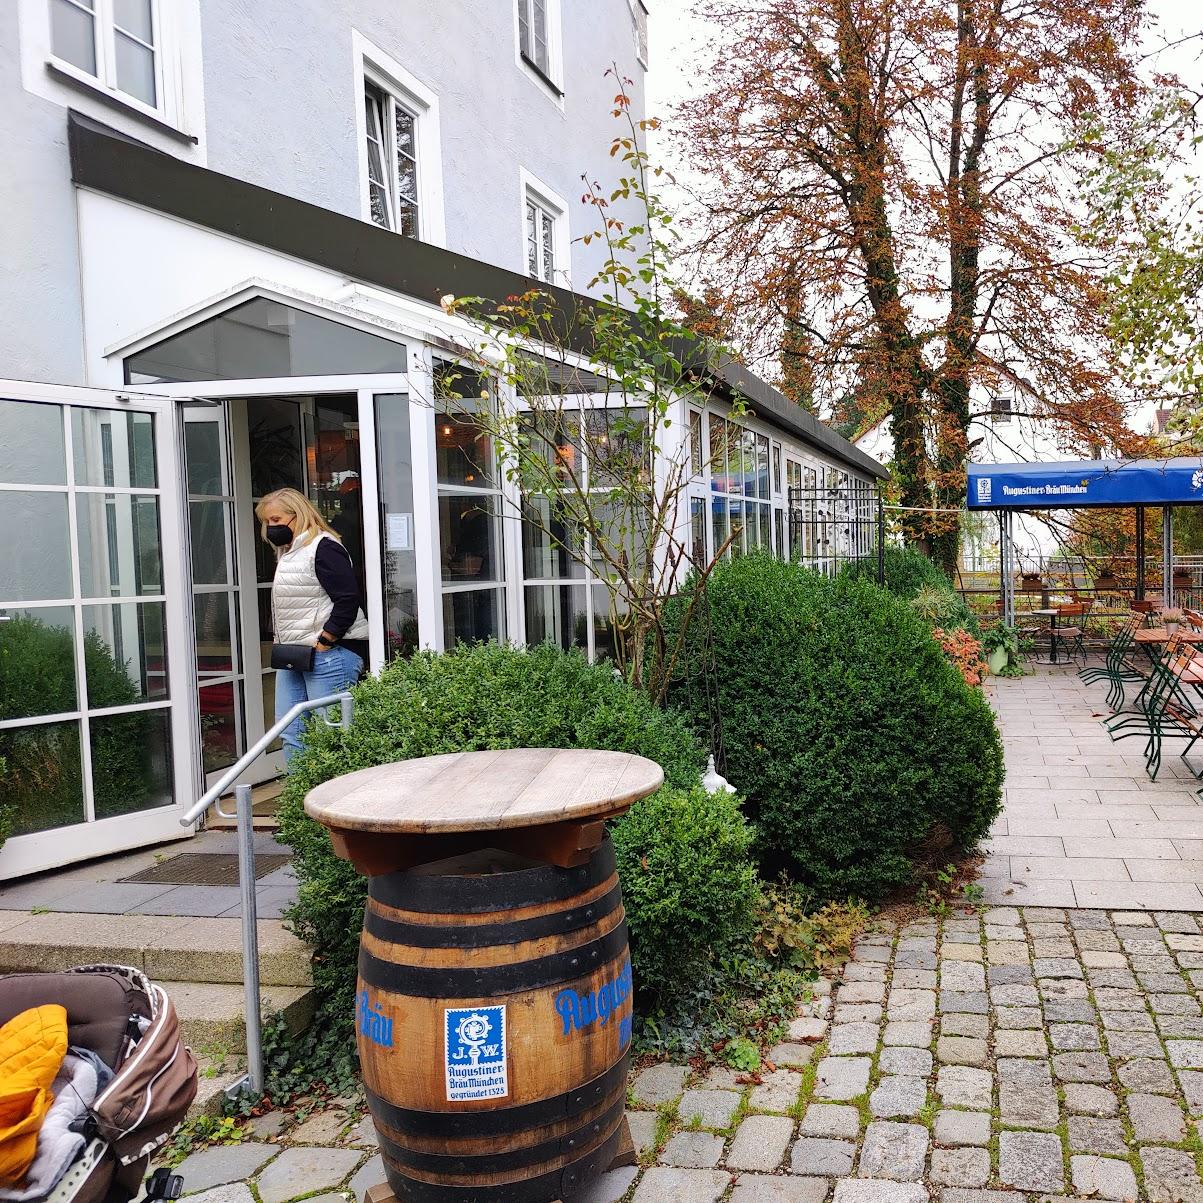 Restaurant "ParkCafe" in Freising